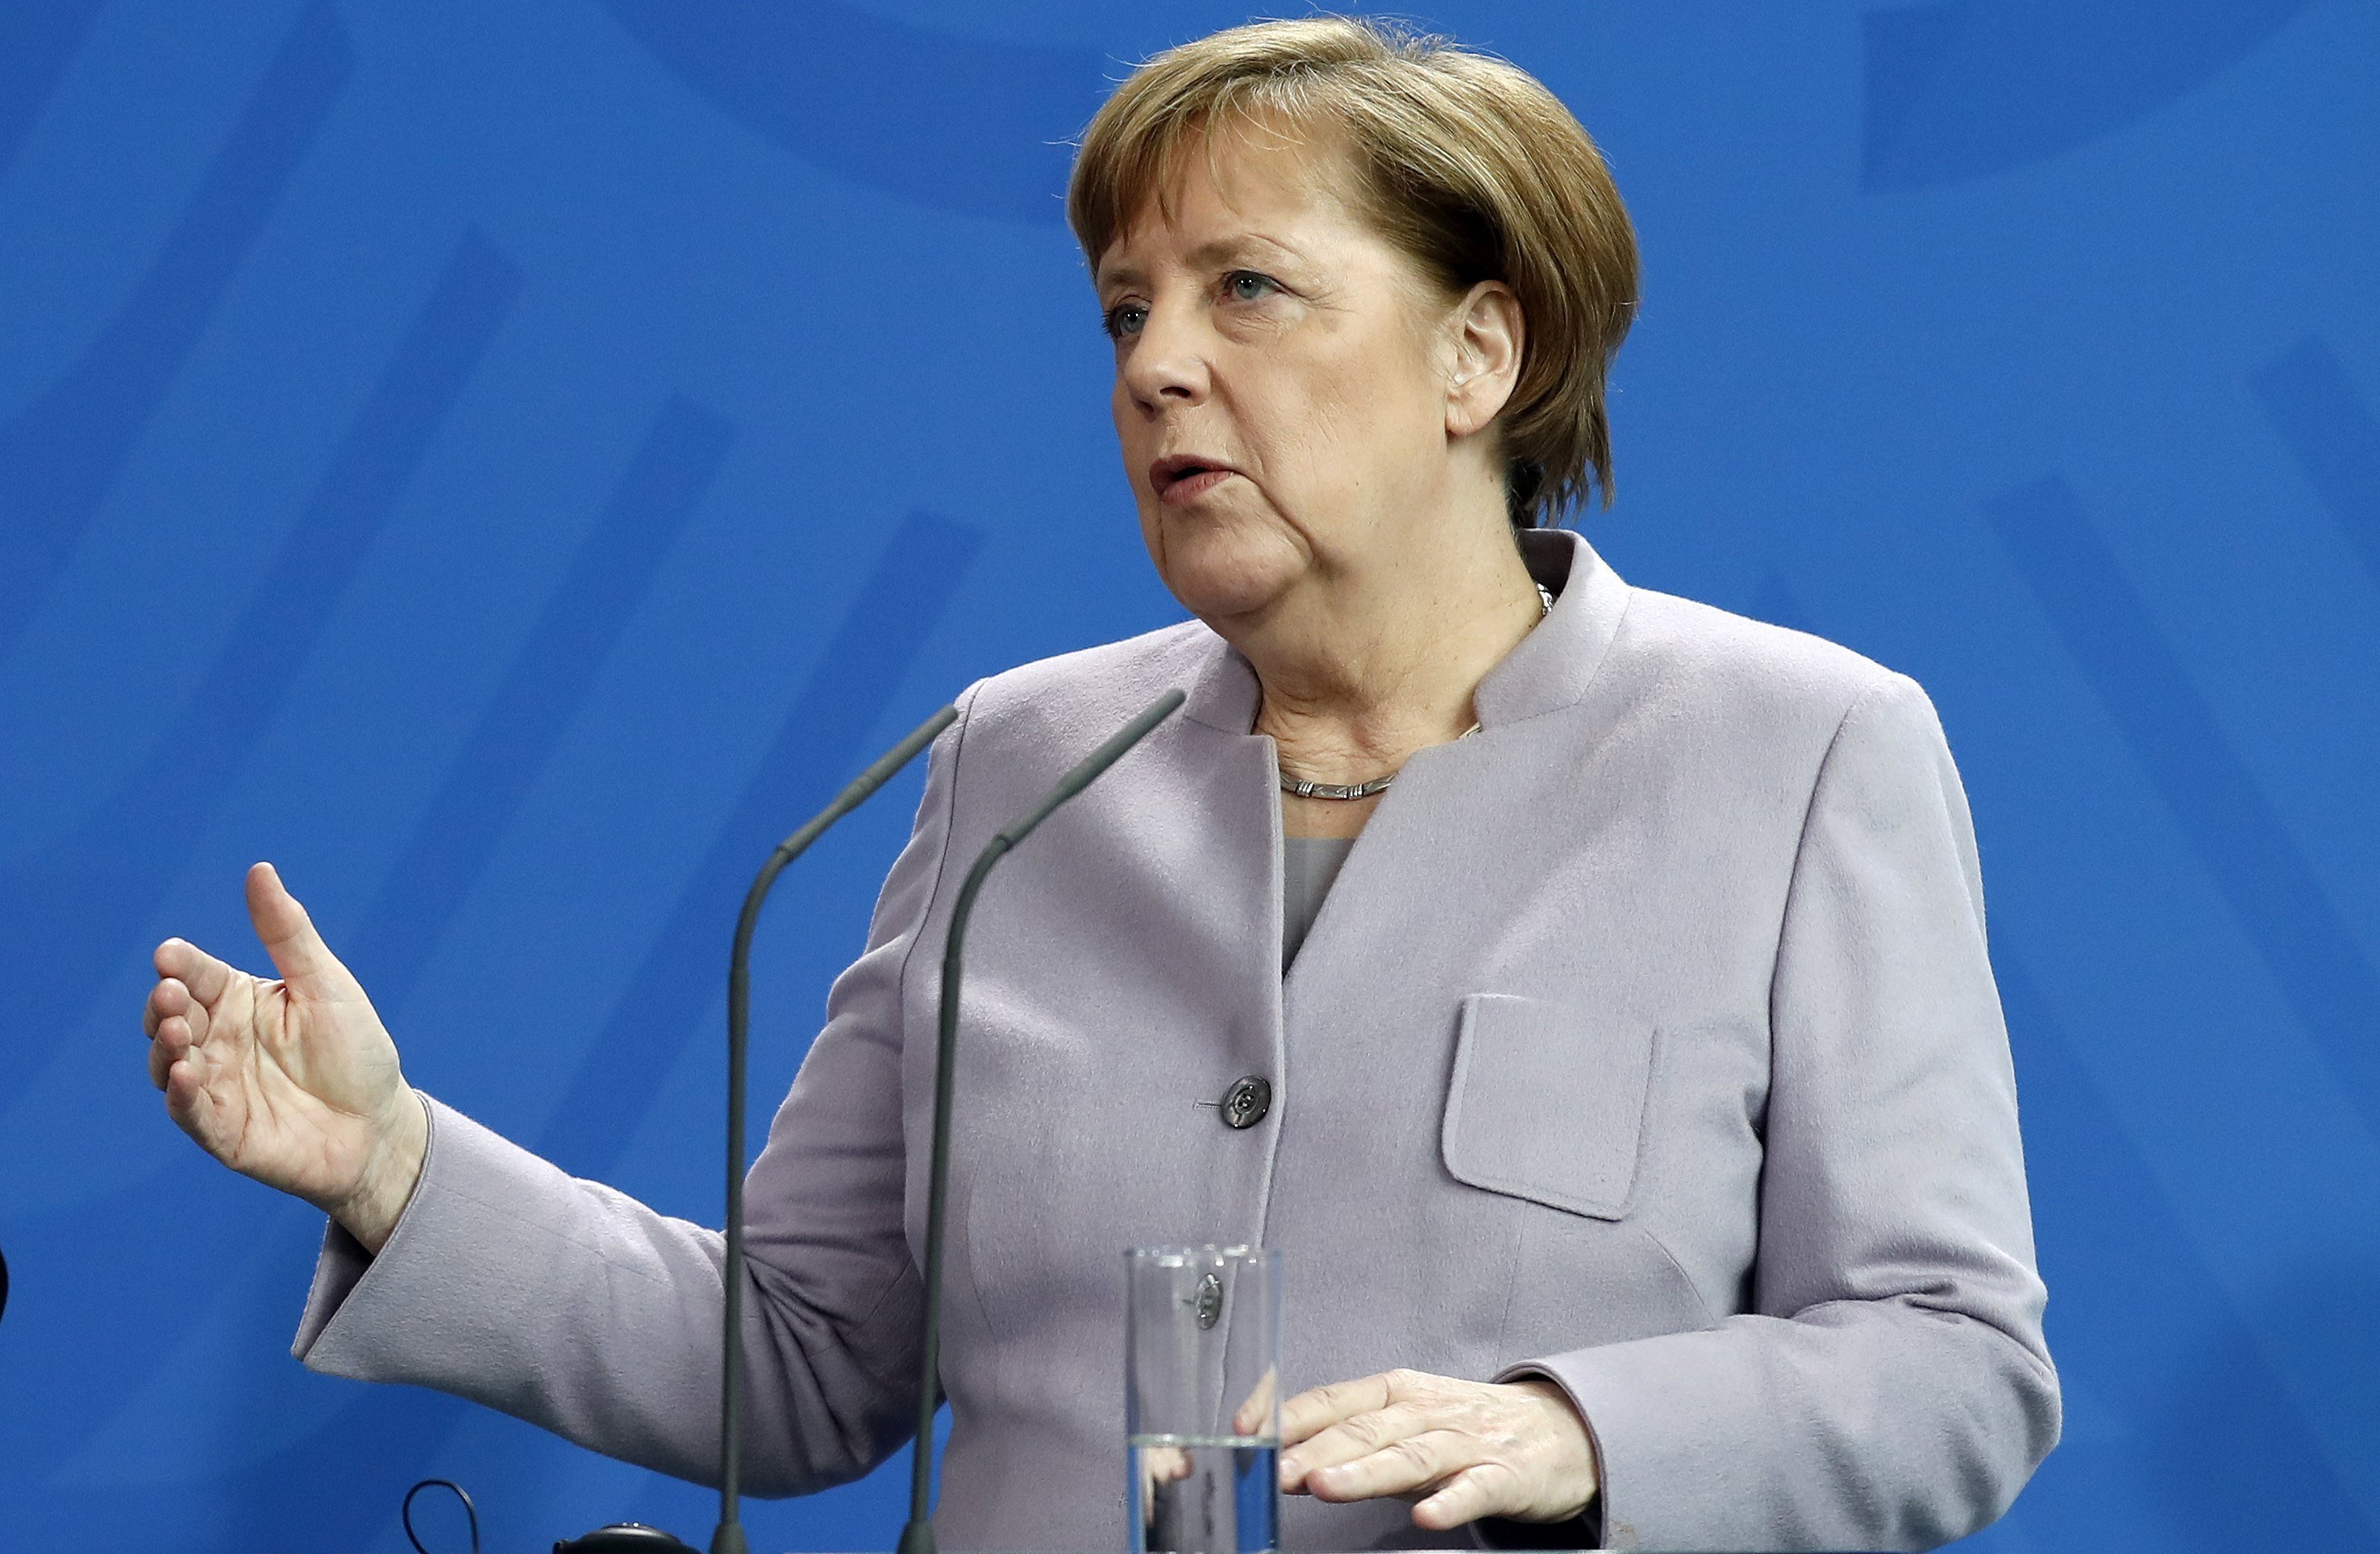 França i Alemanya prefereixen l'acció conjunta per davant de la unilateralitat